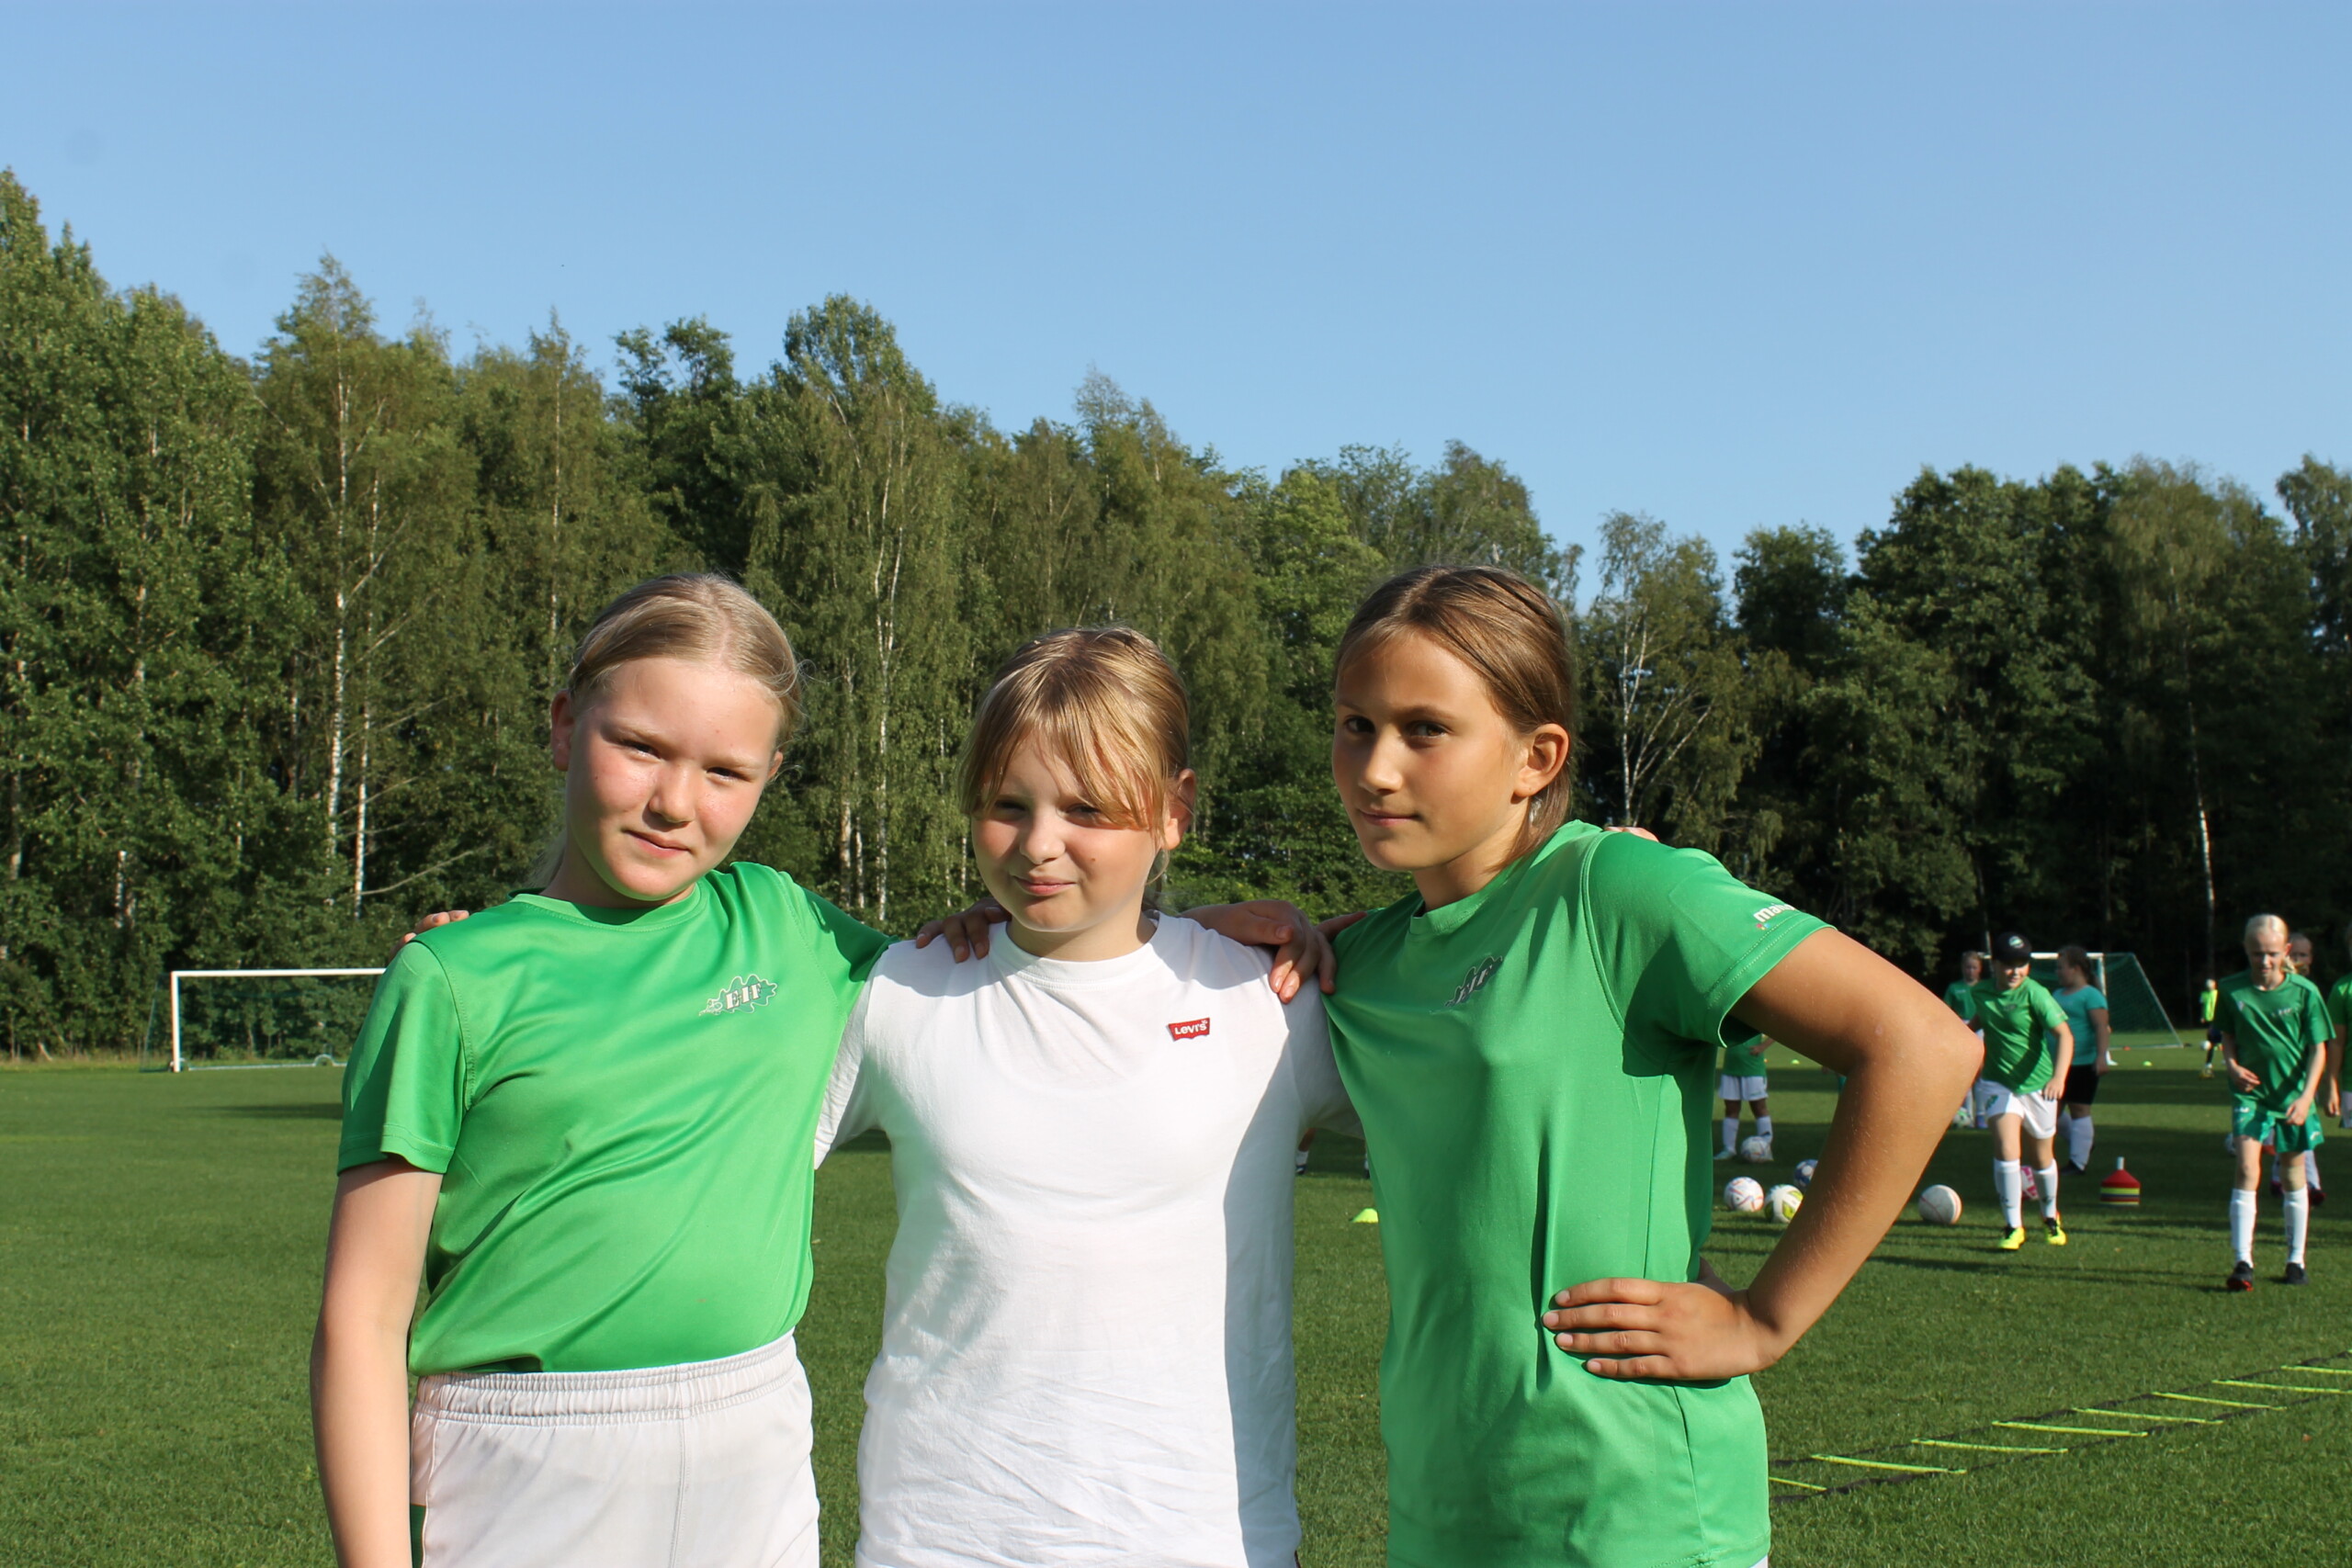 Tre flickor står bredvid varandra på en fotbollsplan och ler.